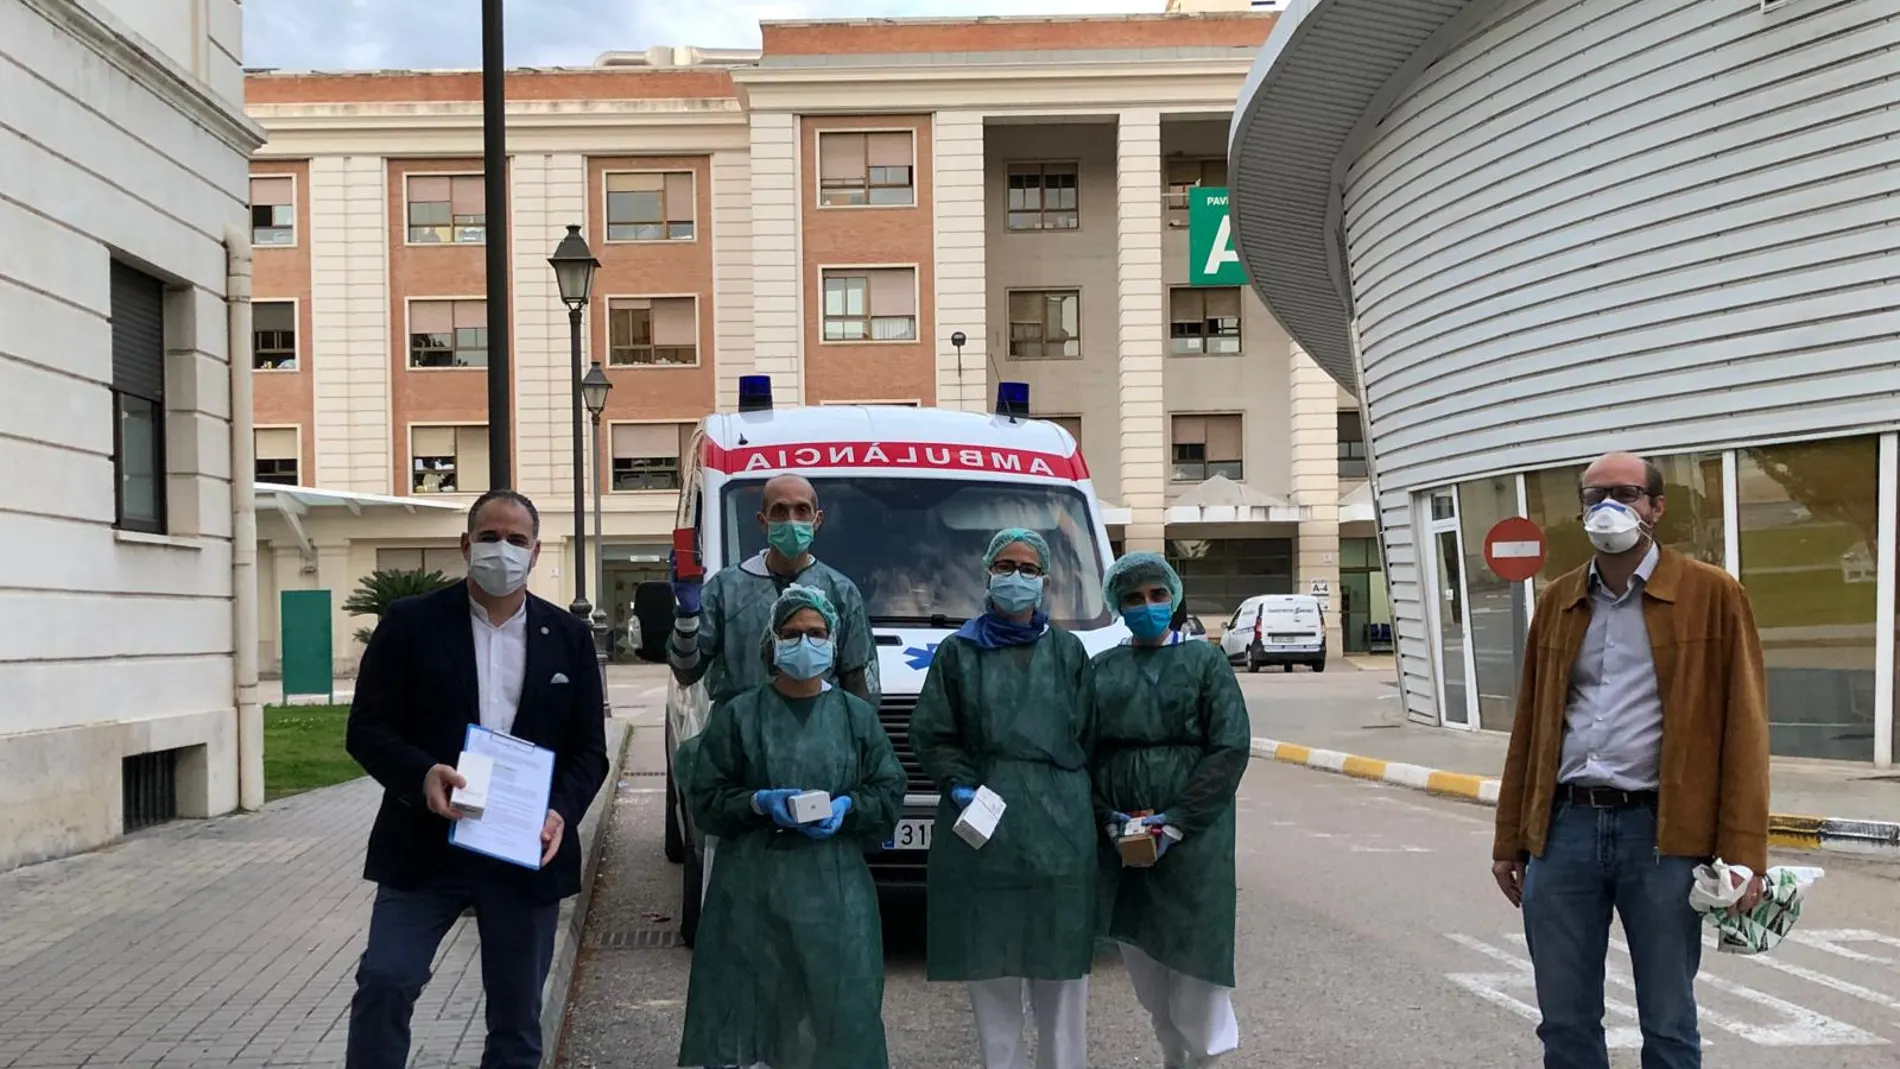 La acción responde a una demanda del Hospital General y es similar a la iniciativa de “Derecho a decir adiós’ italiano y la campaña“Acortando la distancia” de Madrid